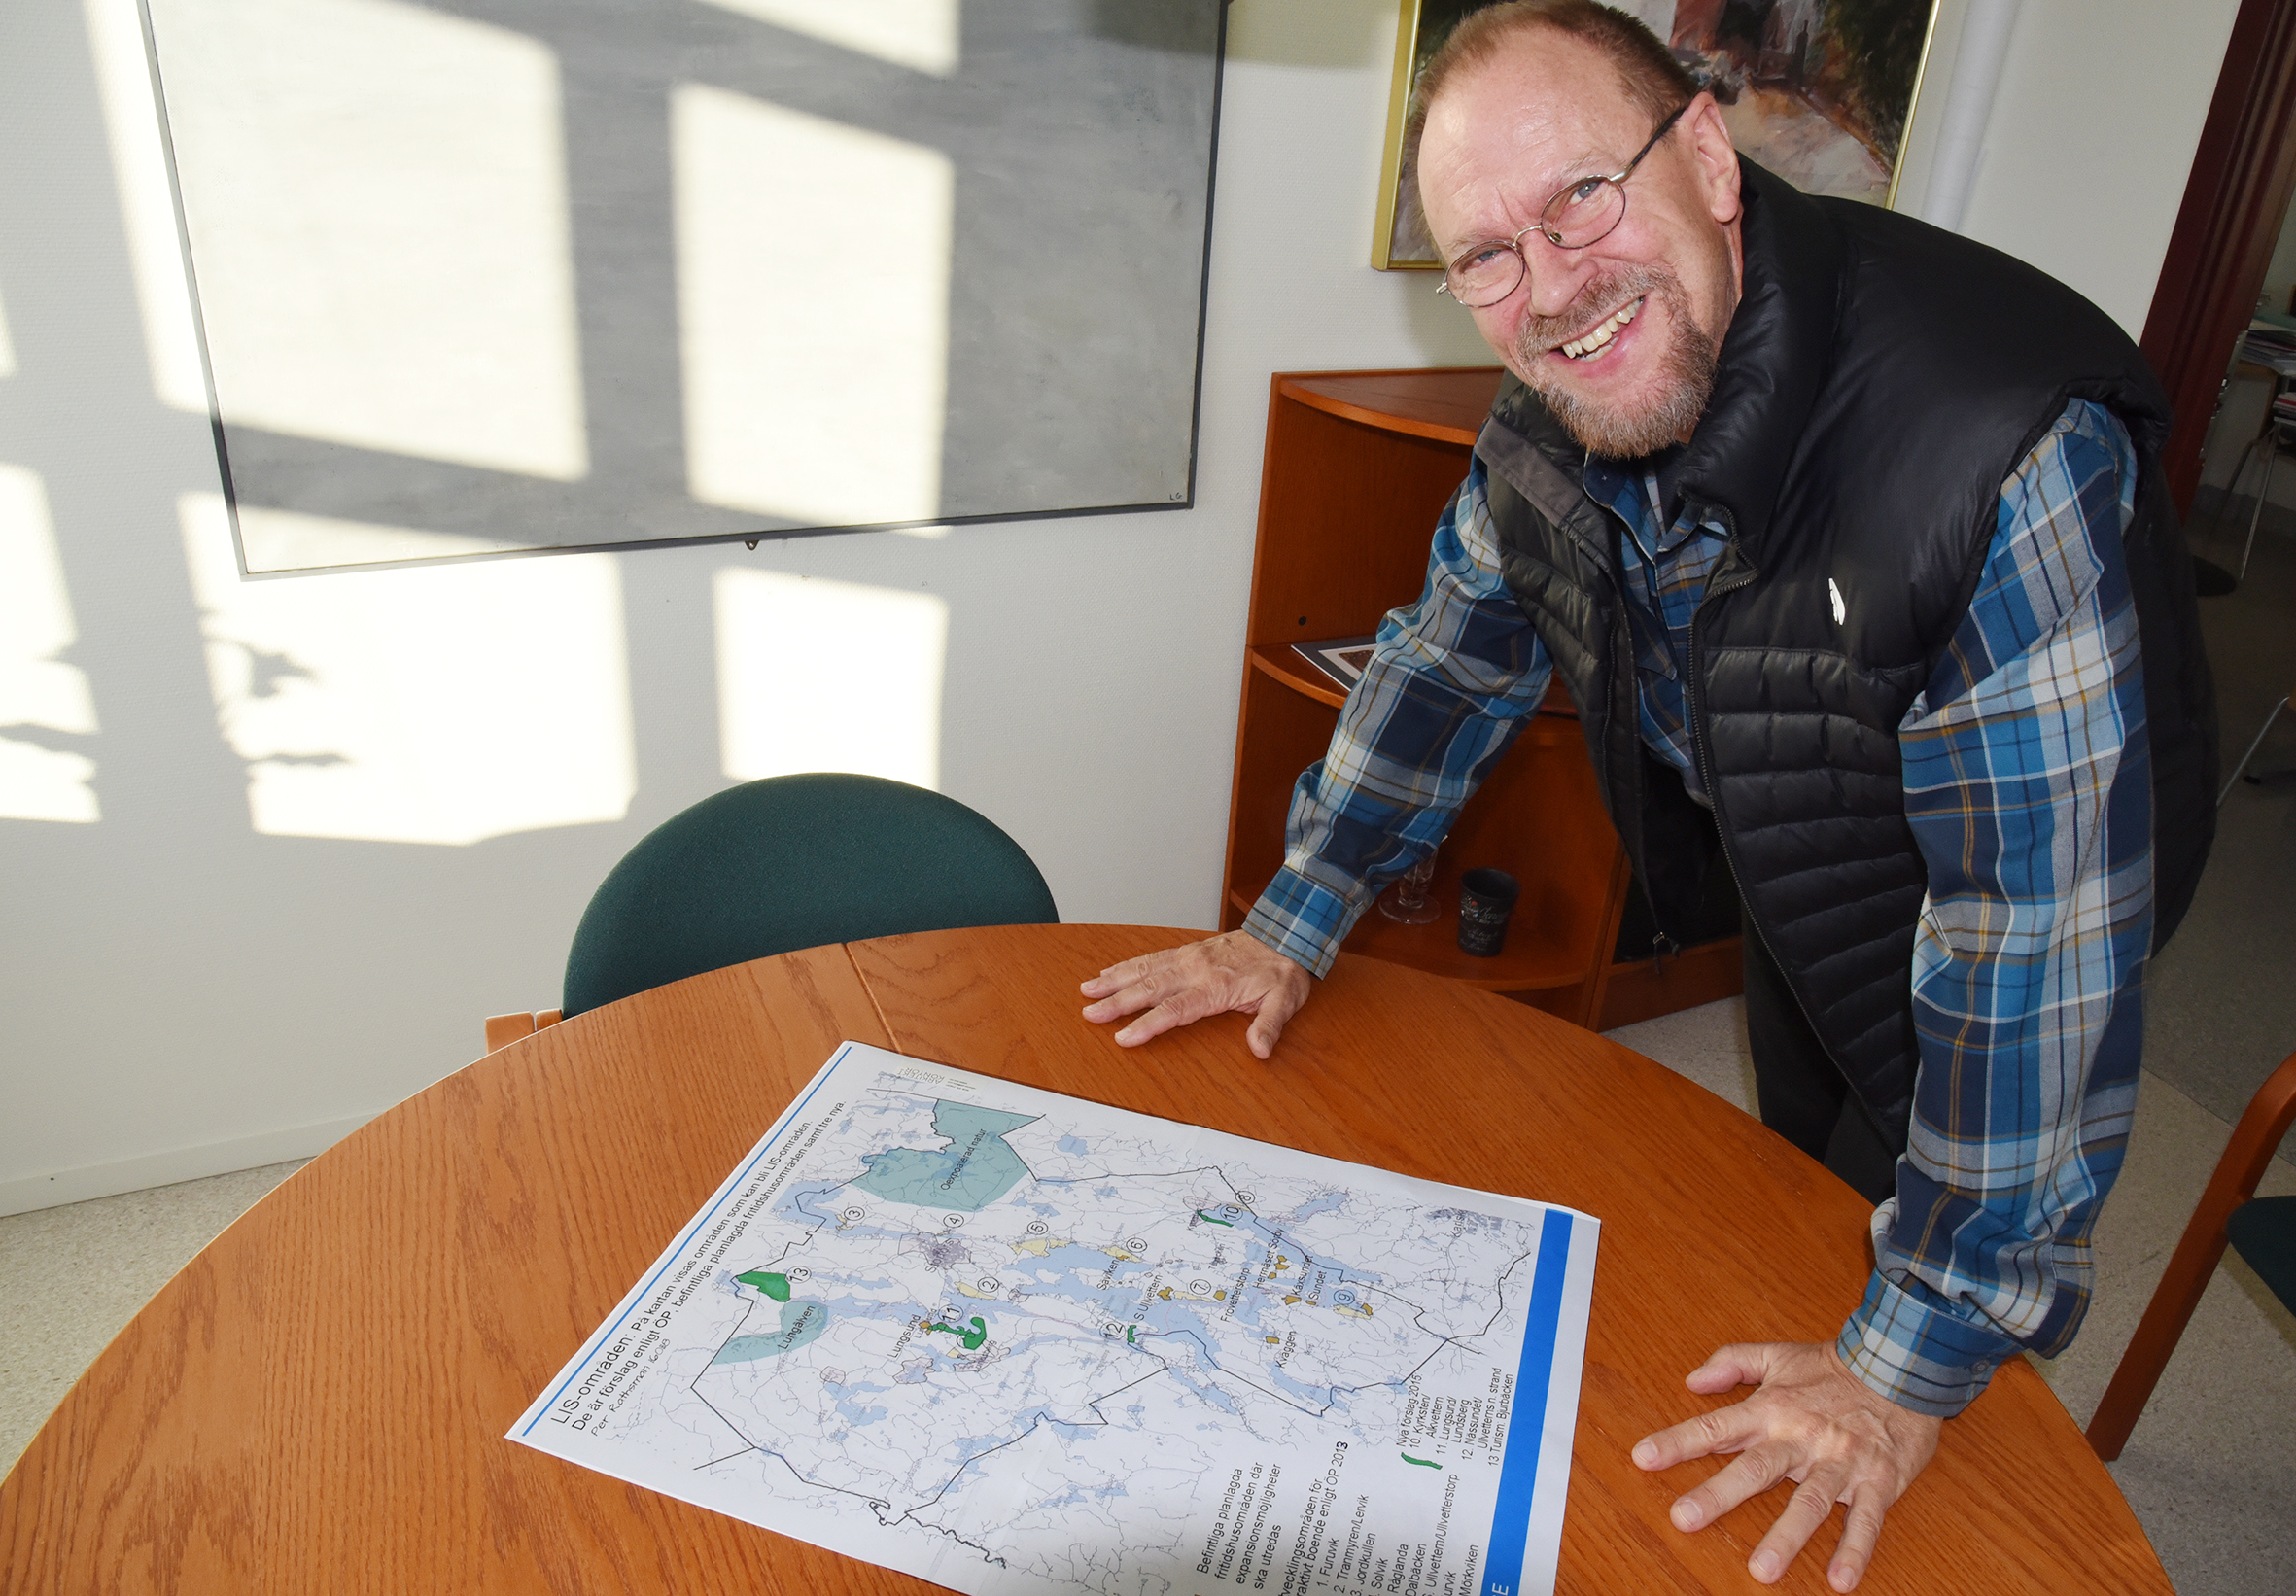 Planeringsarkitekt Per Rathsman jobbar just nu med att ta fram LIS-områden i Storfors.